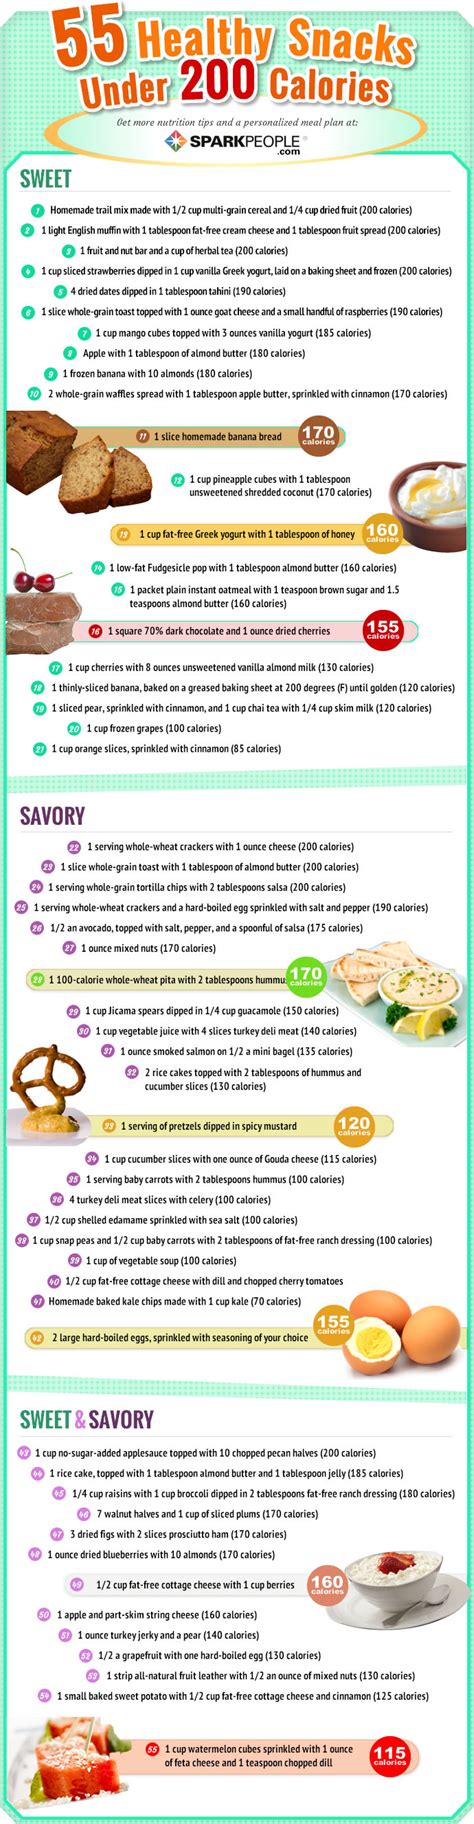 55 Healthy Snacks Under 200 Calories